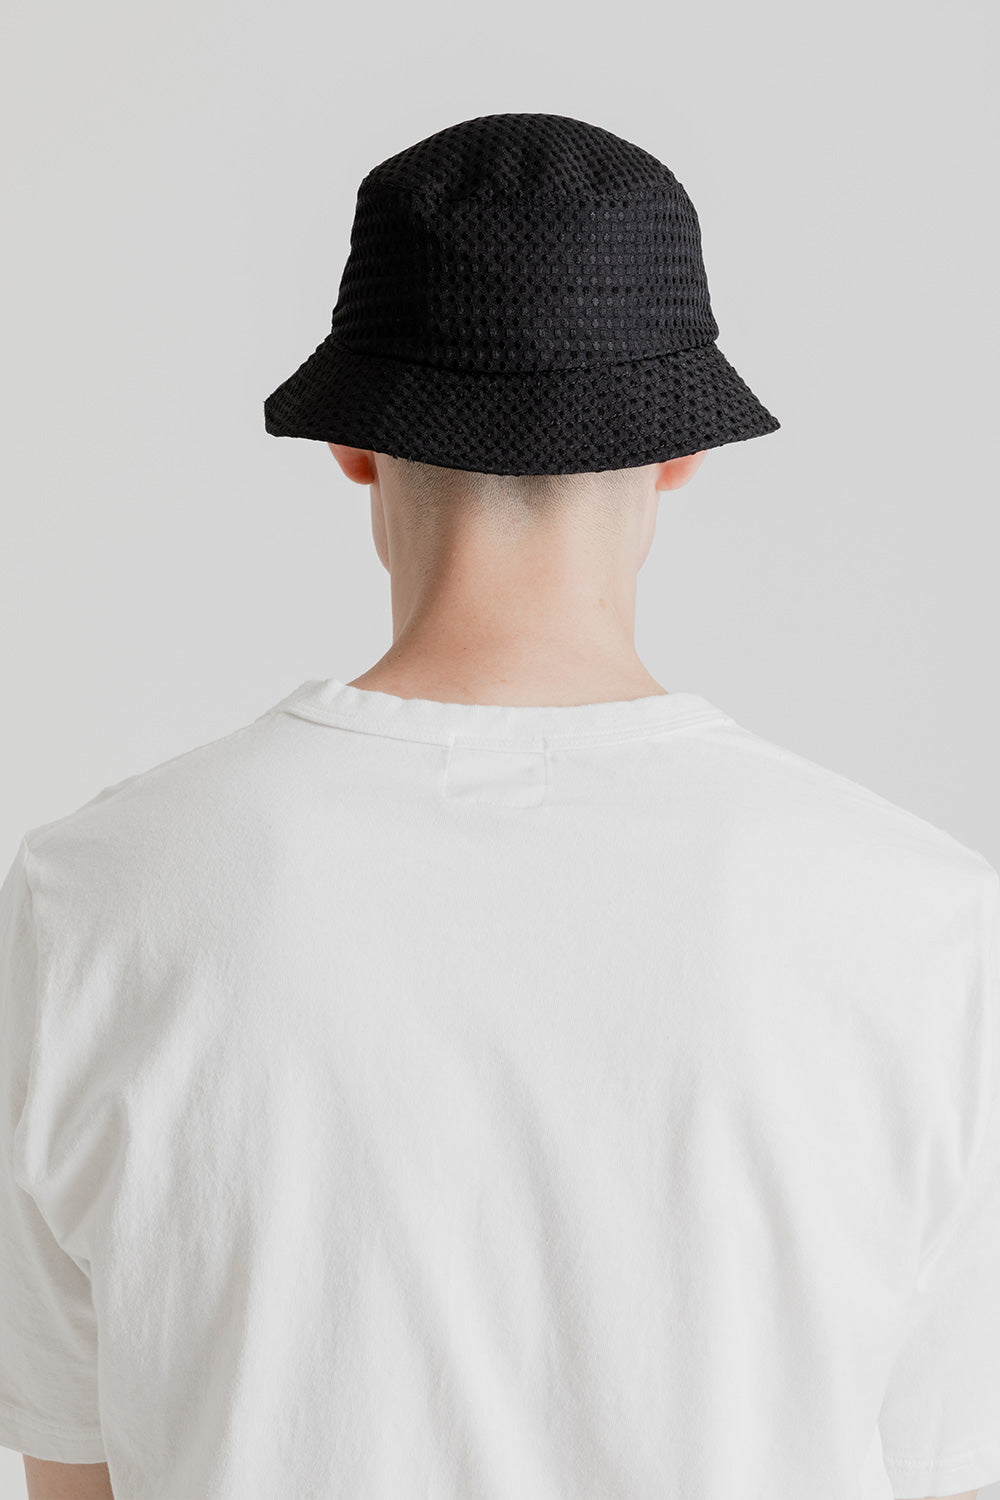 Lite Year Dobby Bucket Hat in Black